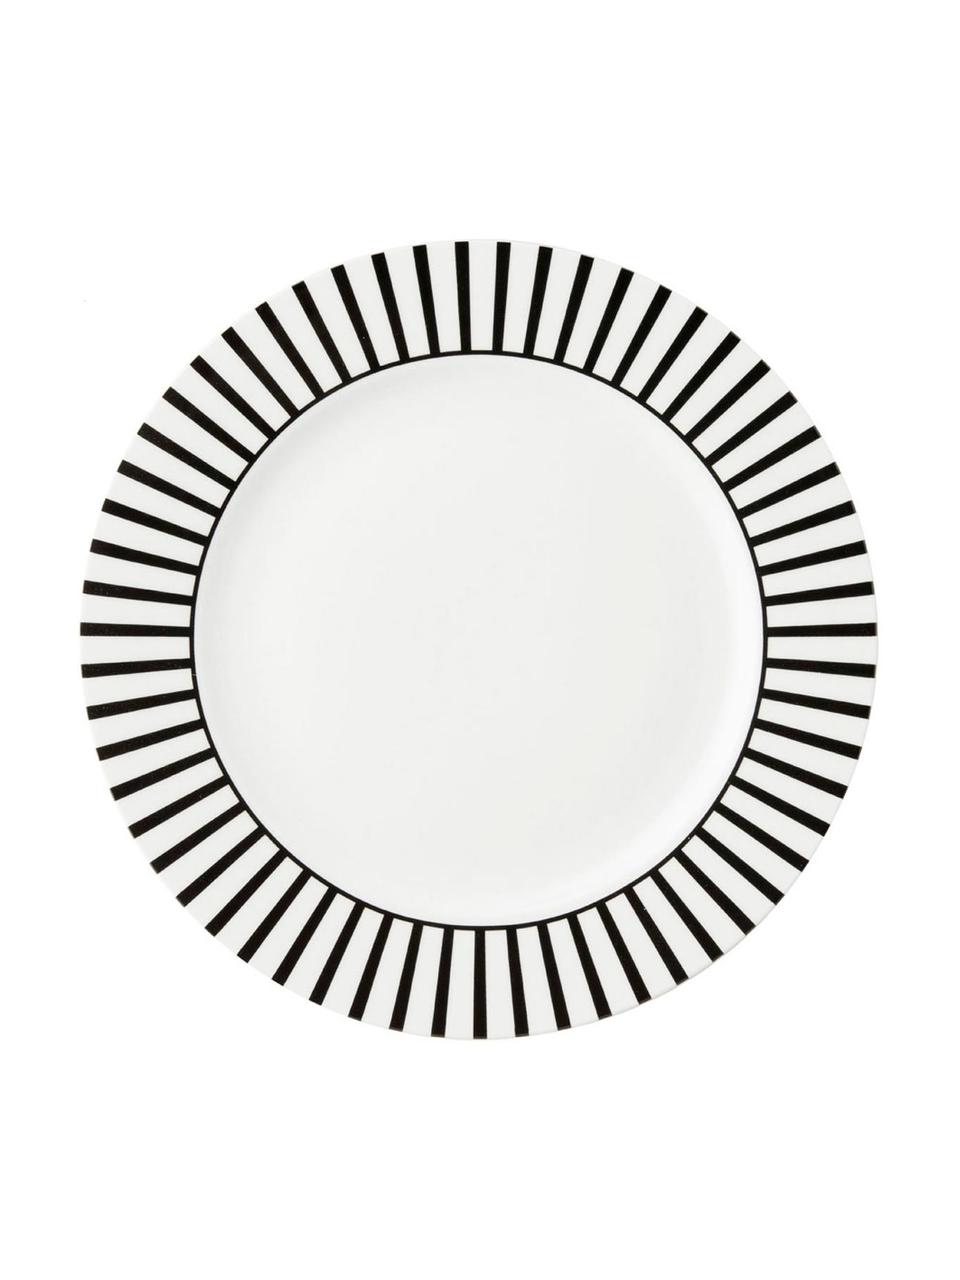 Raňajkový tanier s pásikmi Ceres Loft, 4 ks, Porcelán, Biela, čierna, Ø 21 x V 2 cm